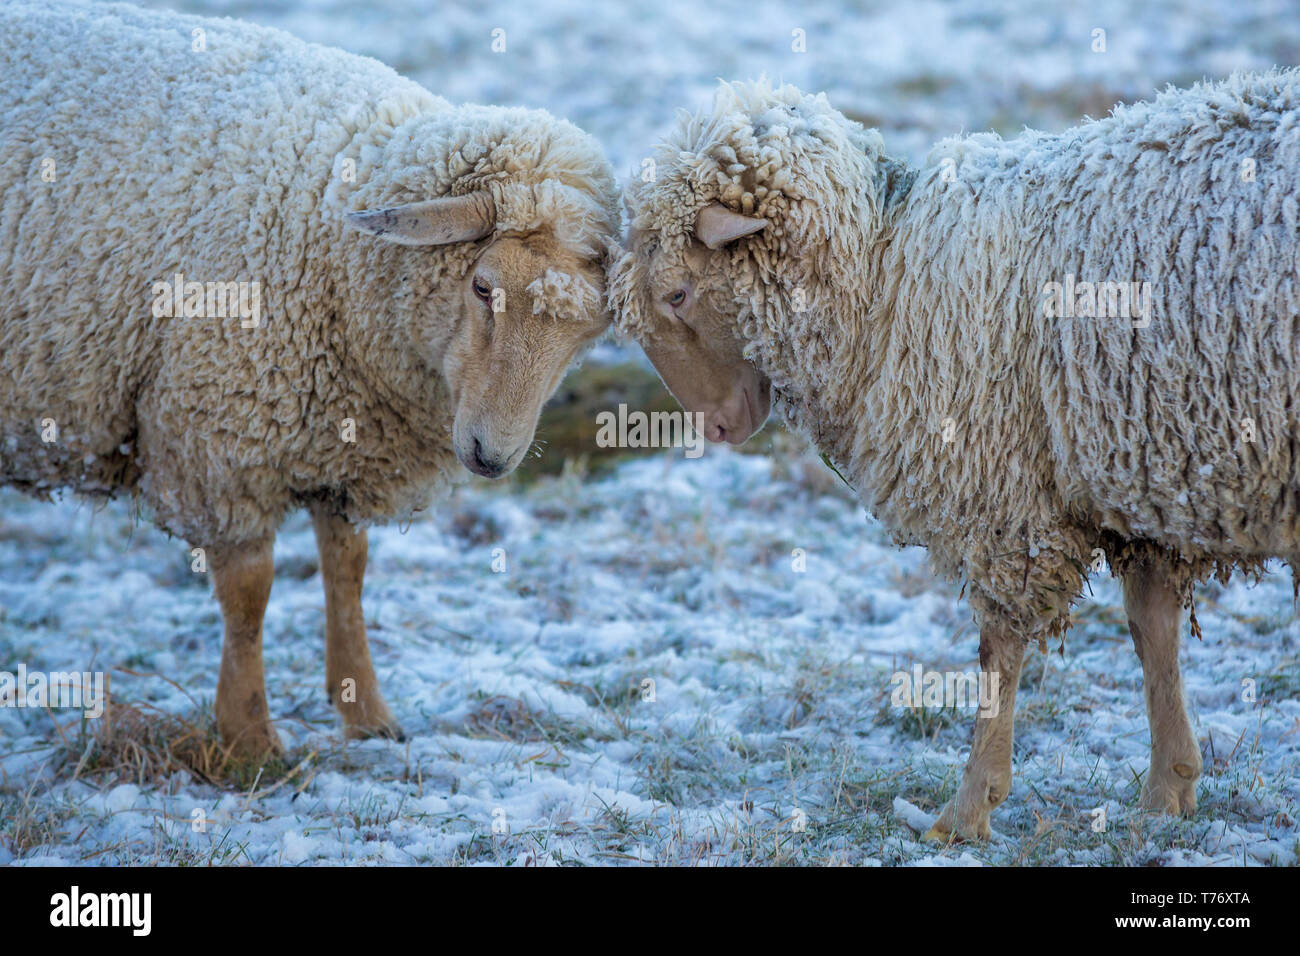 Zwei Schafe ihre Köpfe zusammenstecken An einem frostigen Wintermorgen ihren Pelz in Eis und Schnee bedeckt. Stockfoto